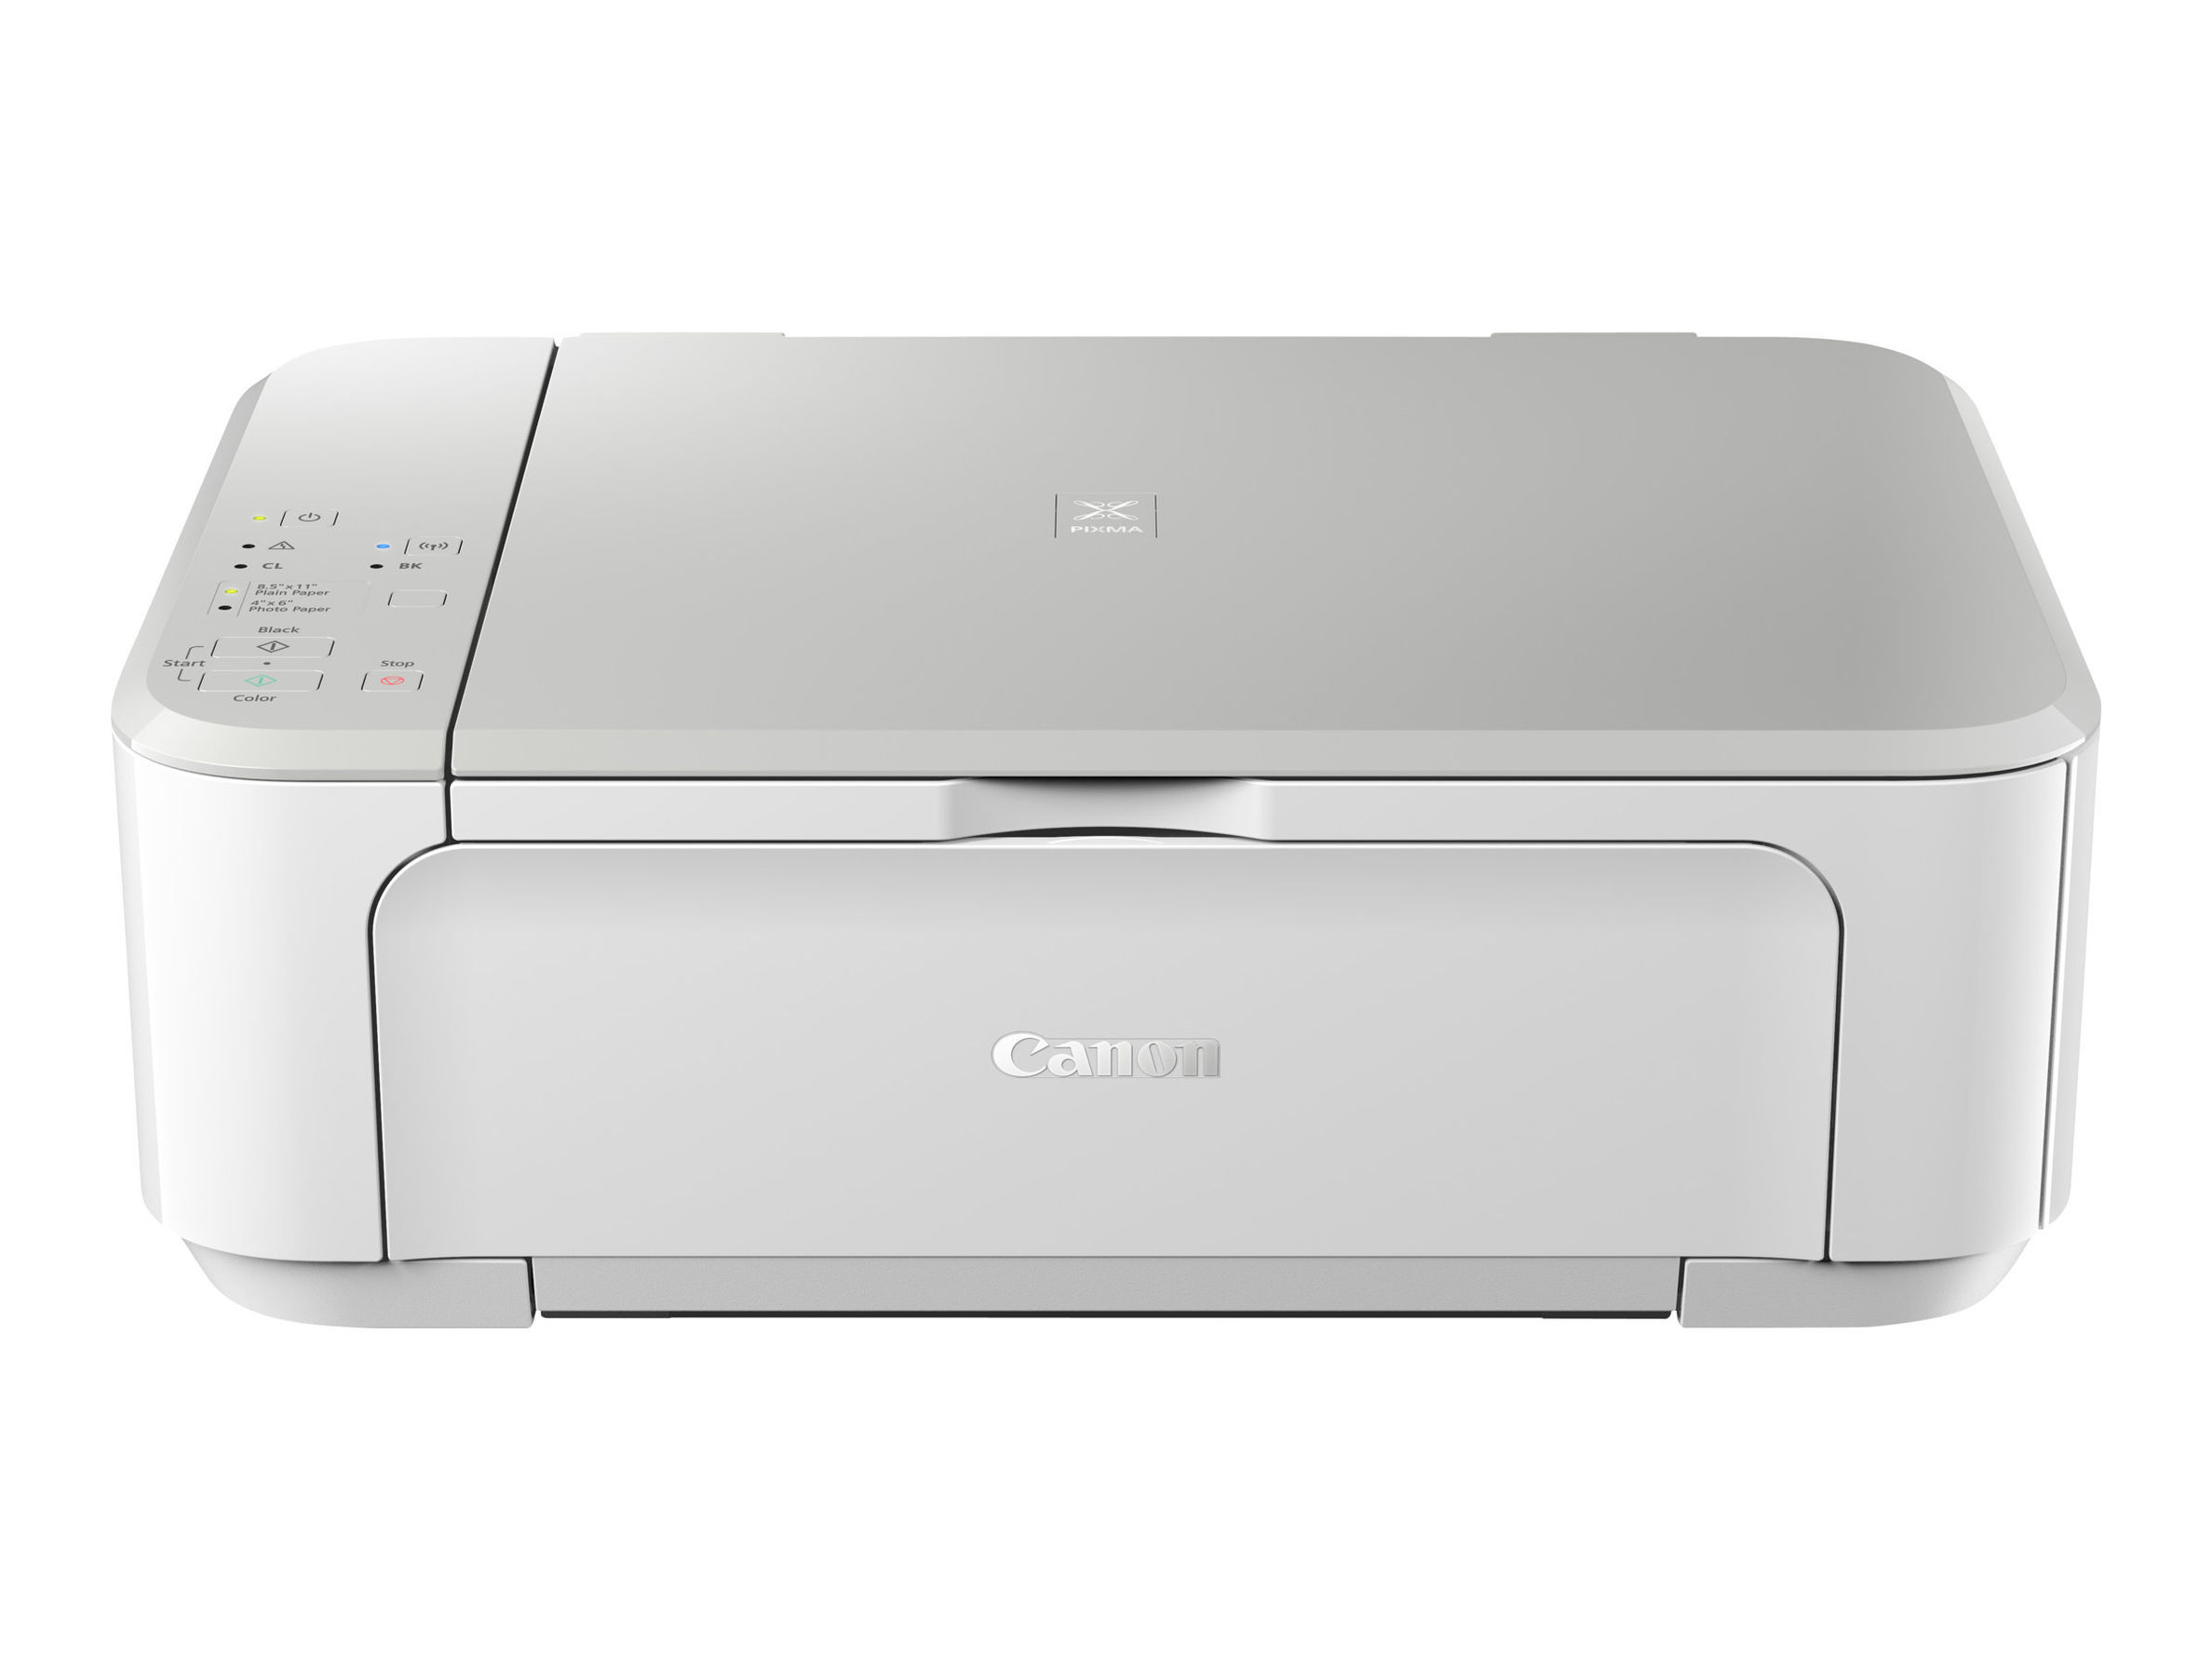 CANON PIXMA MG3650 Weiss MFP A4 Drucken Kopieren Scannen bis zu  4800x1200dpi WLAN Pixma Cloud Link Print App | Weltbild.at